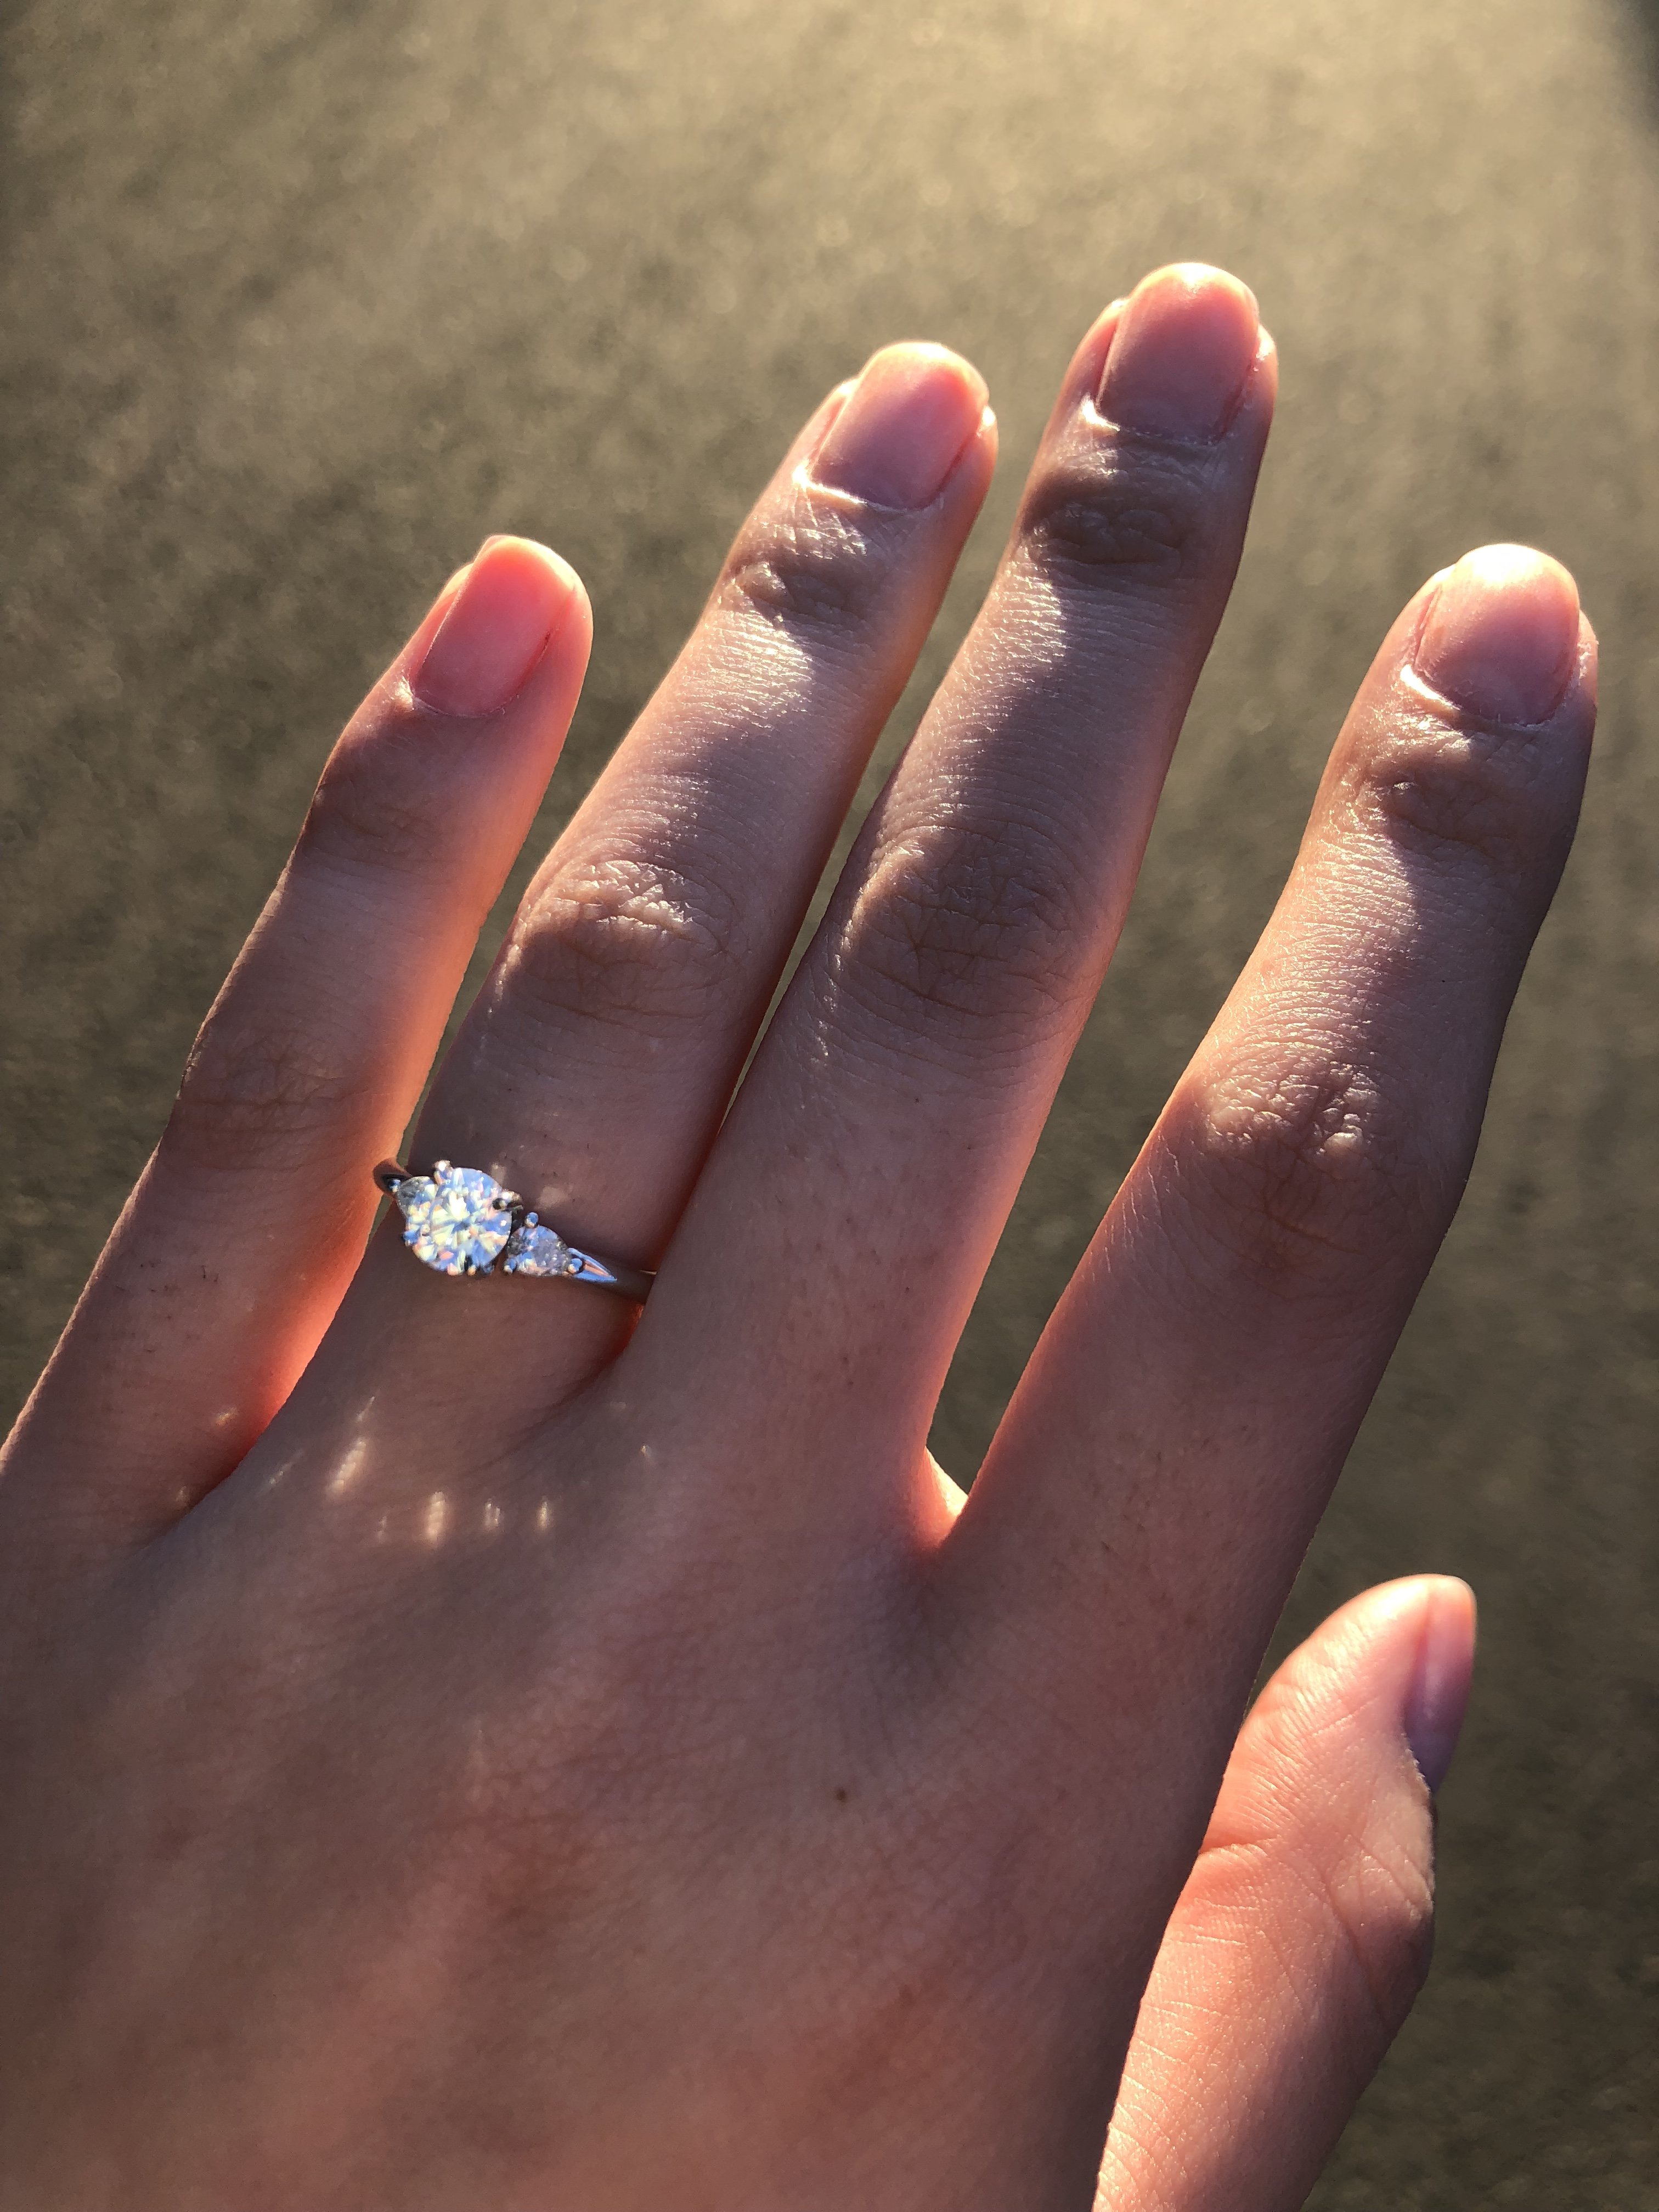 Понравились кольца. Обручальное кольцо на пальце. Красивое кольцо на пальце. Красивые кольца на руке. Кольцо обручальное женское на руке.